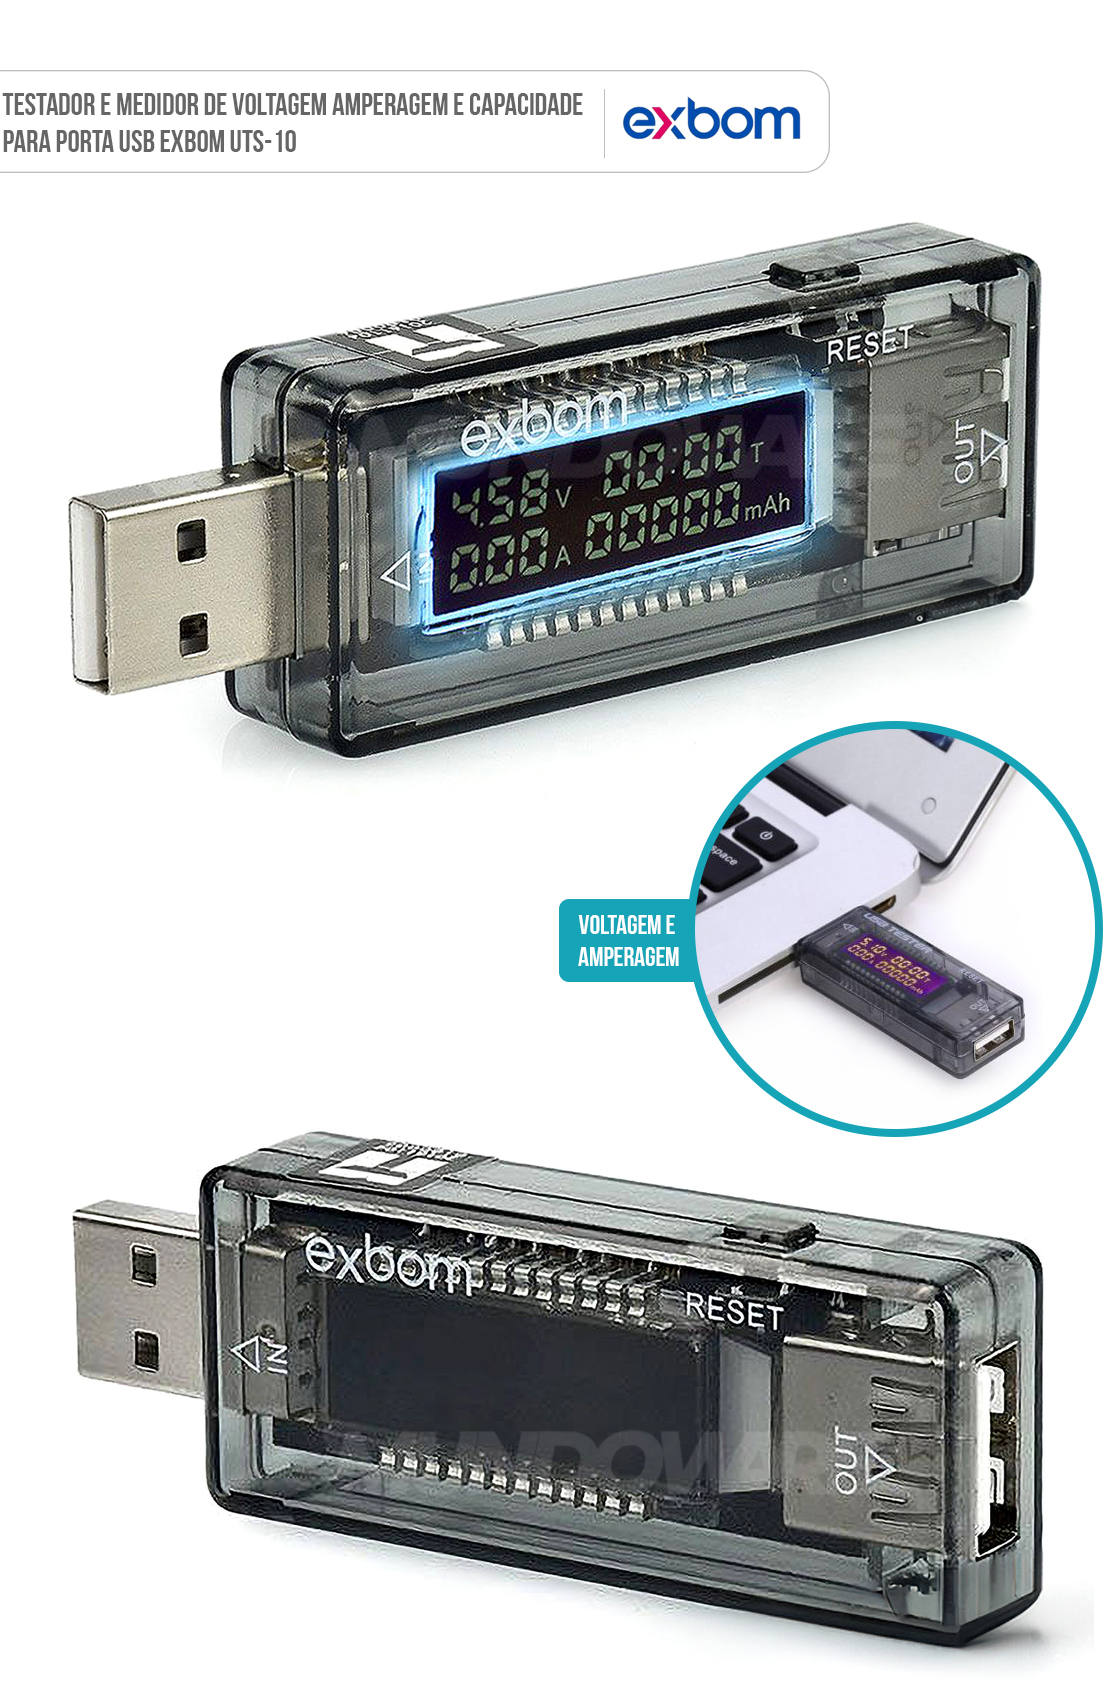 Testador e Medidor de Voltagem Amperagem e Capacidade para Porta USB Exbom UTS-10